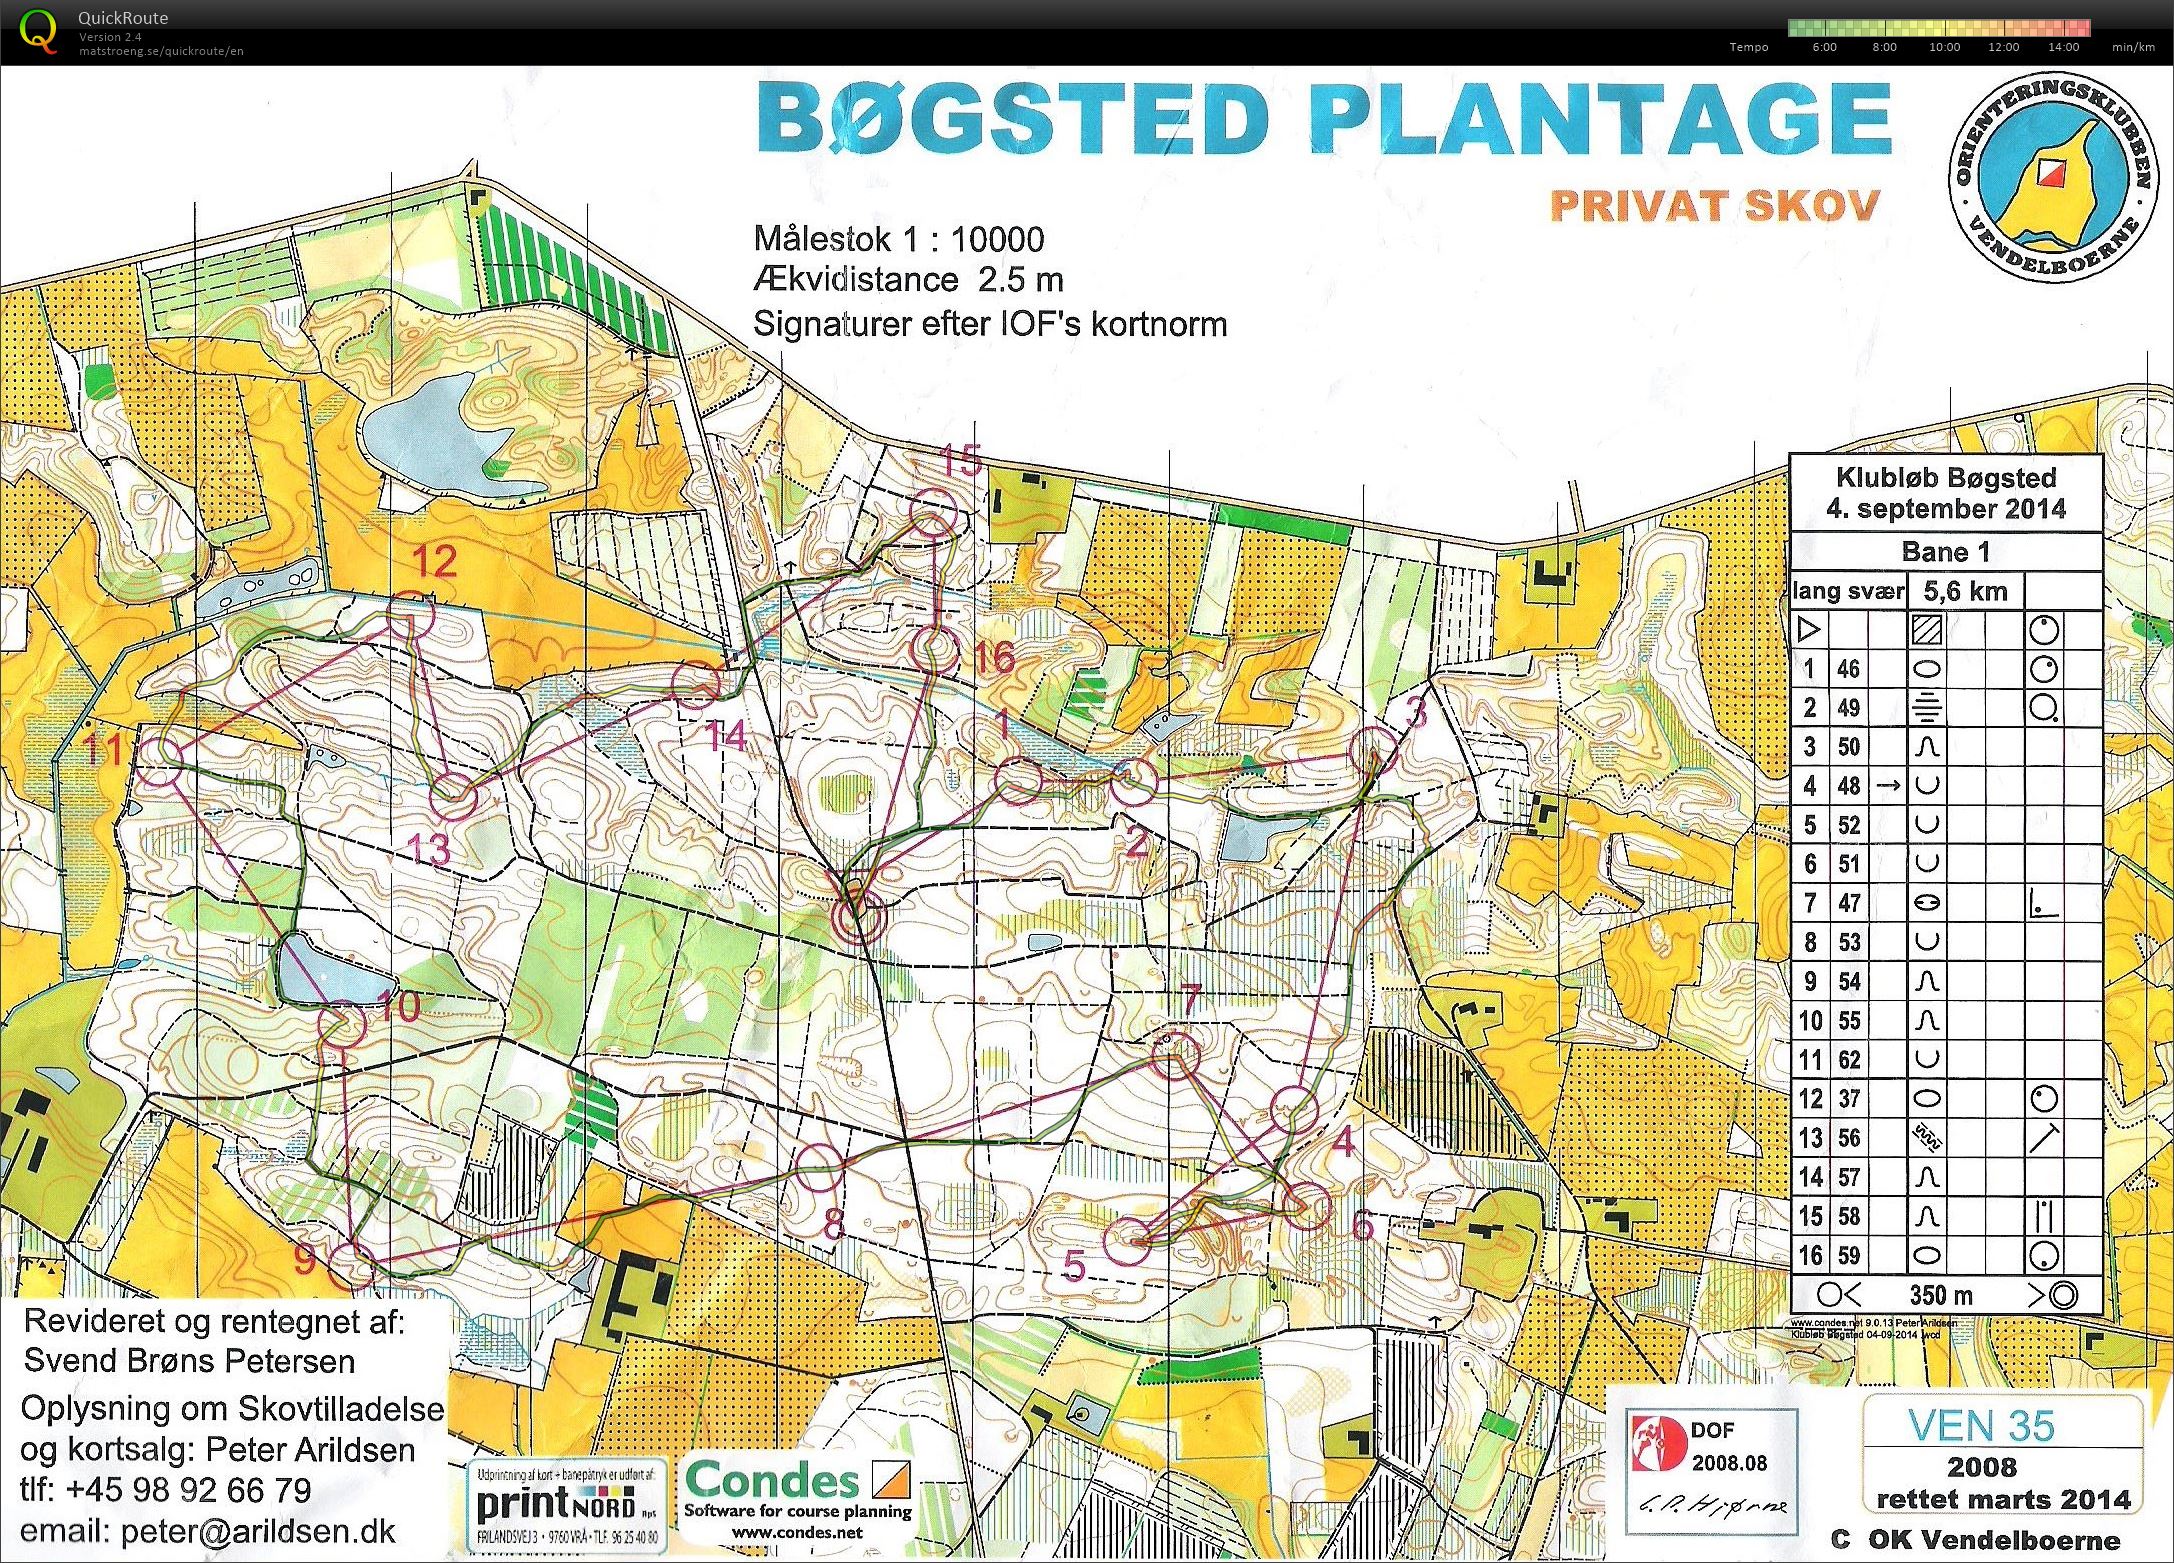 Bøgsted Plantage - Bane 1 (04.09.2014)